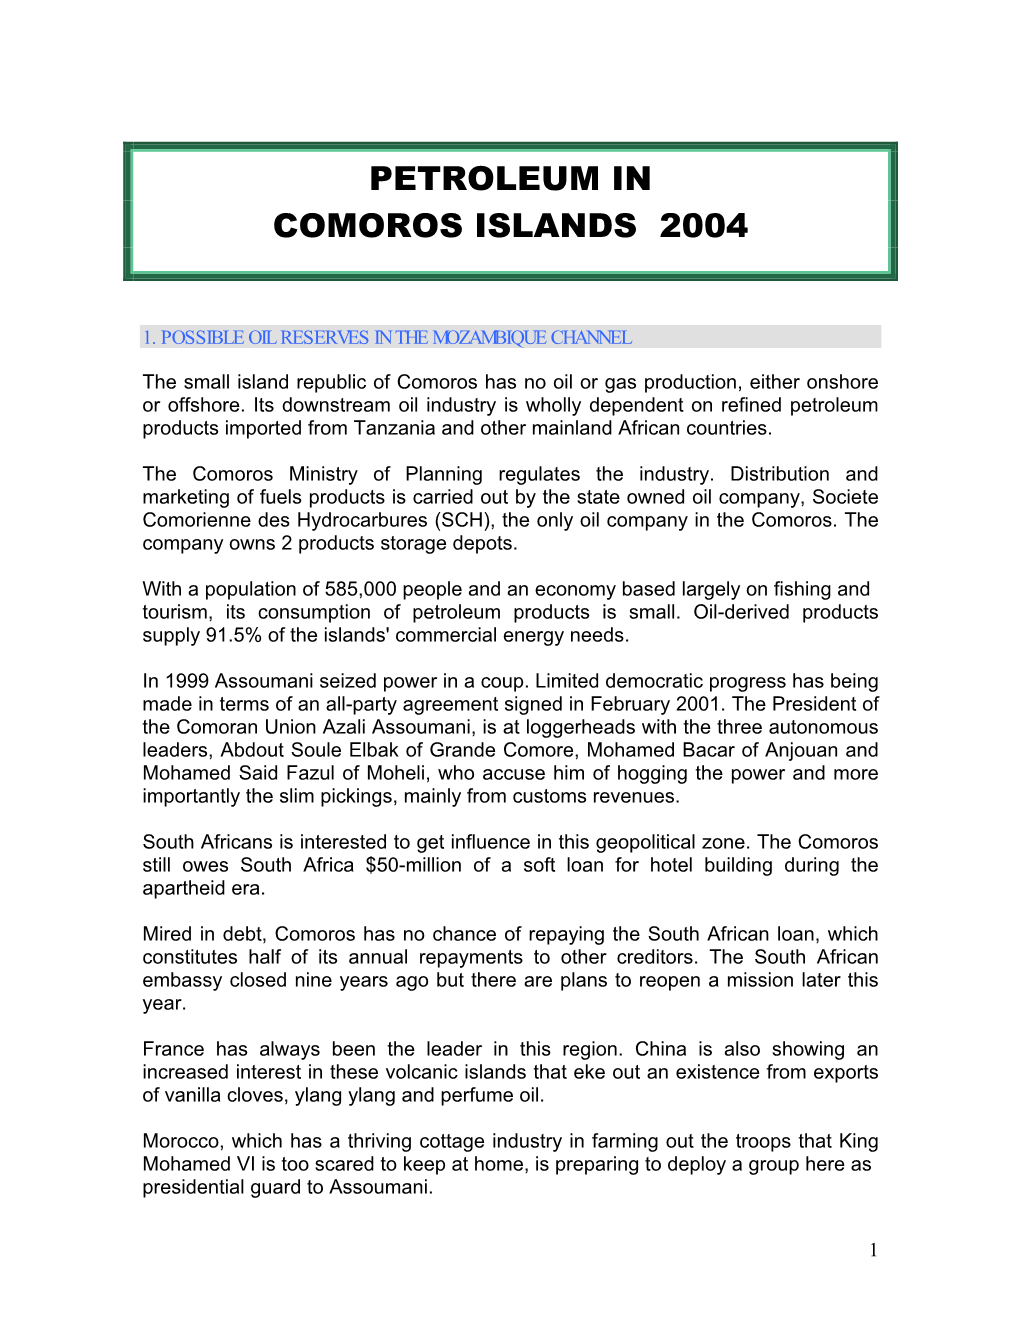 Petroleum in Comoros Islands 2004